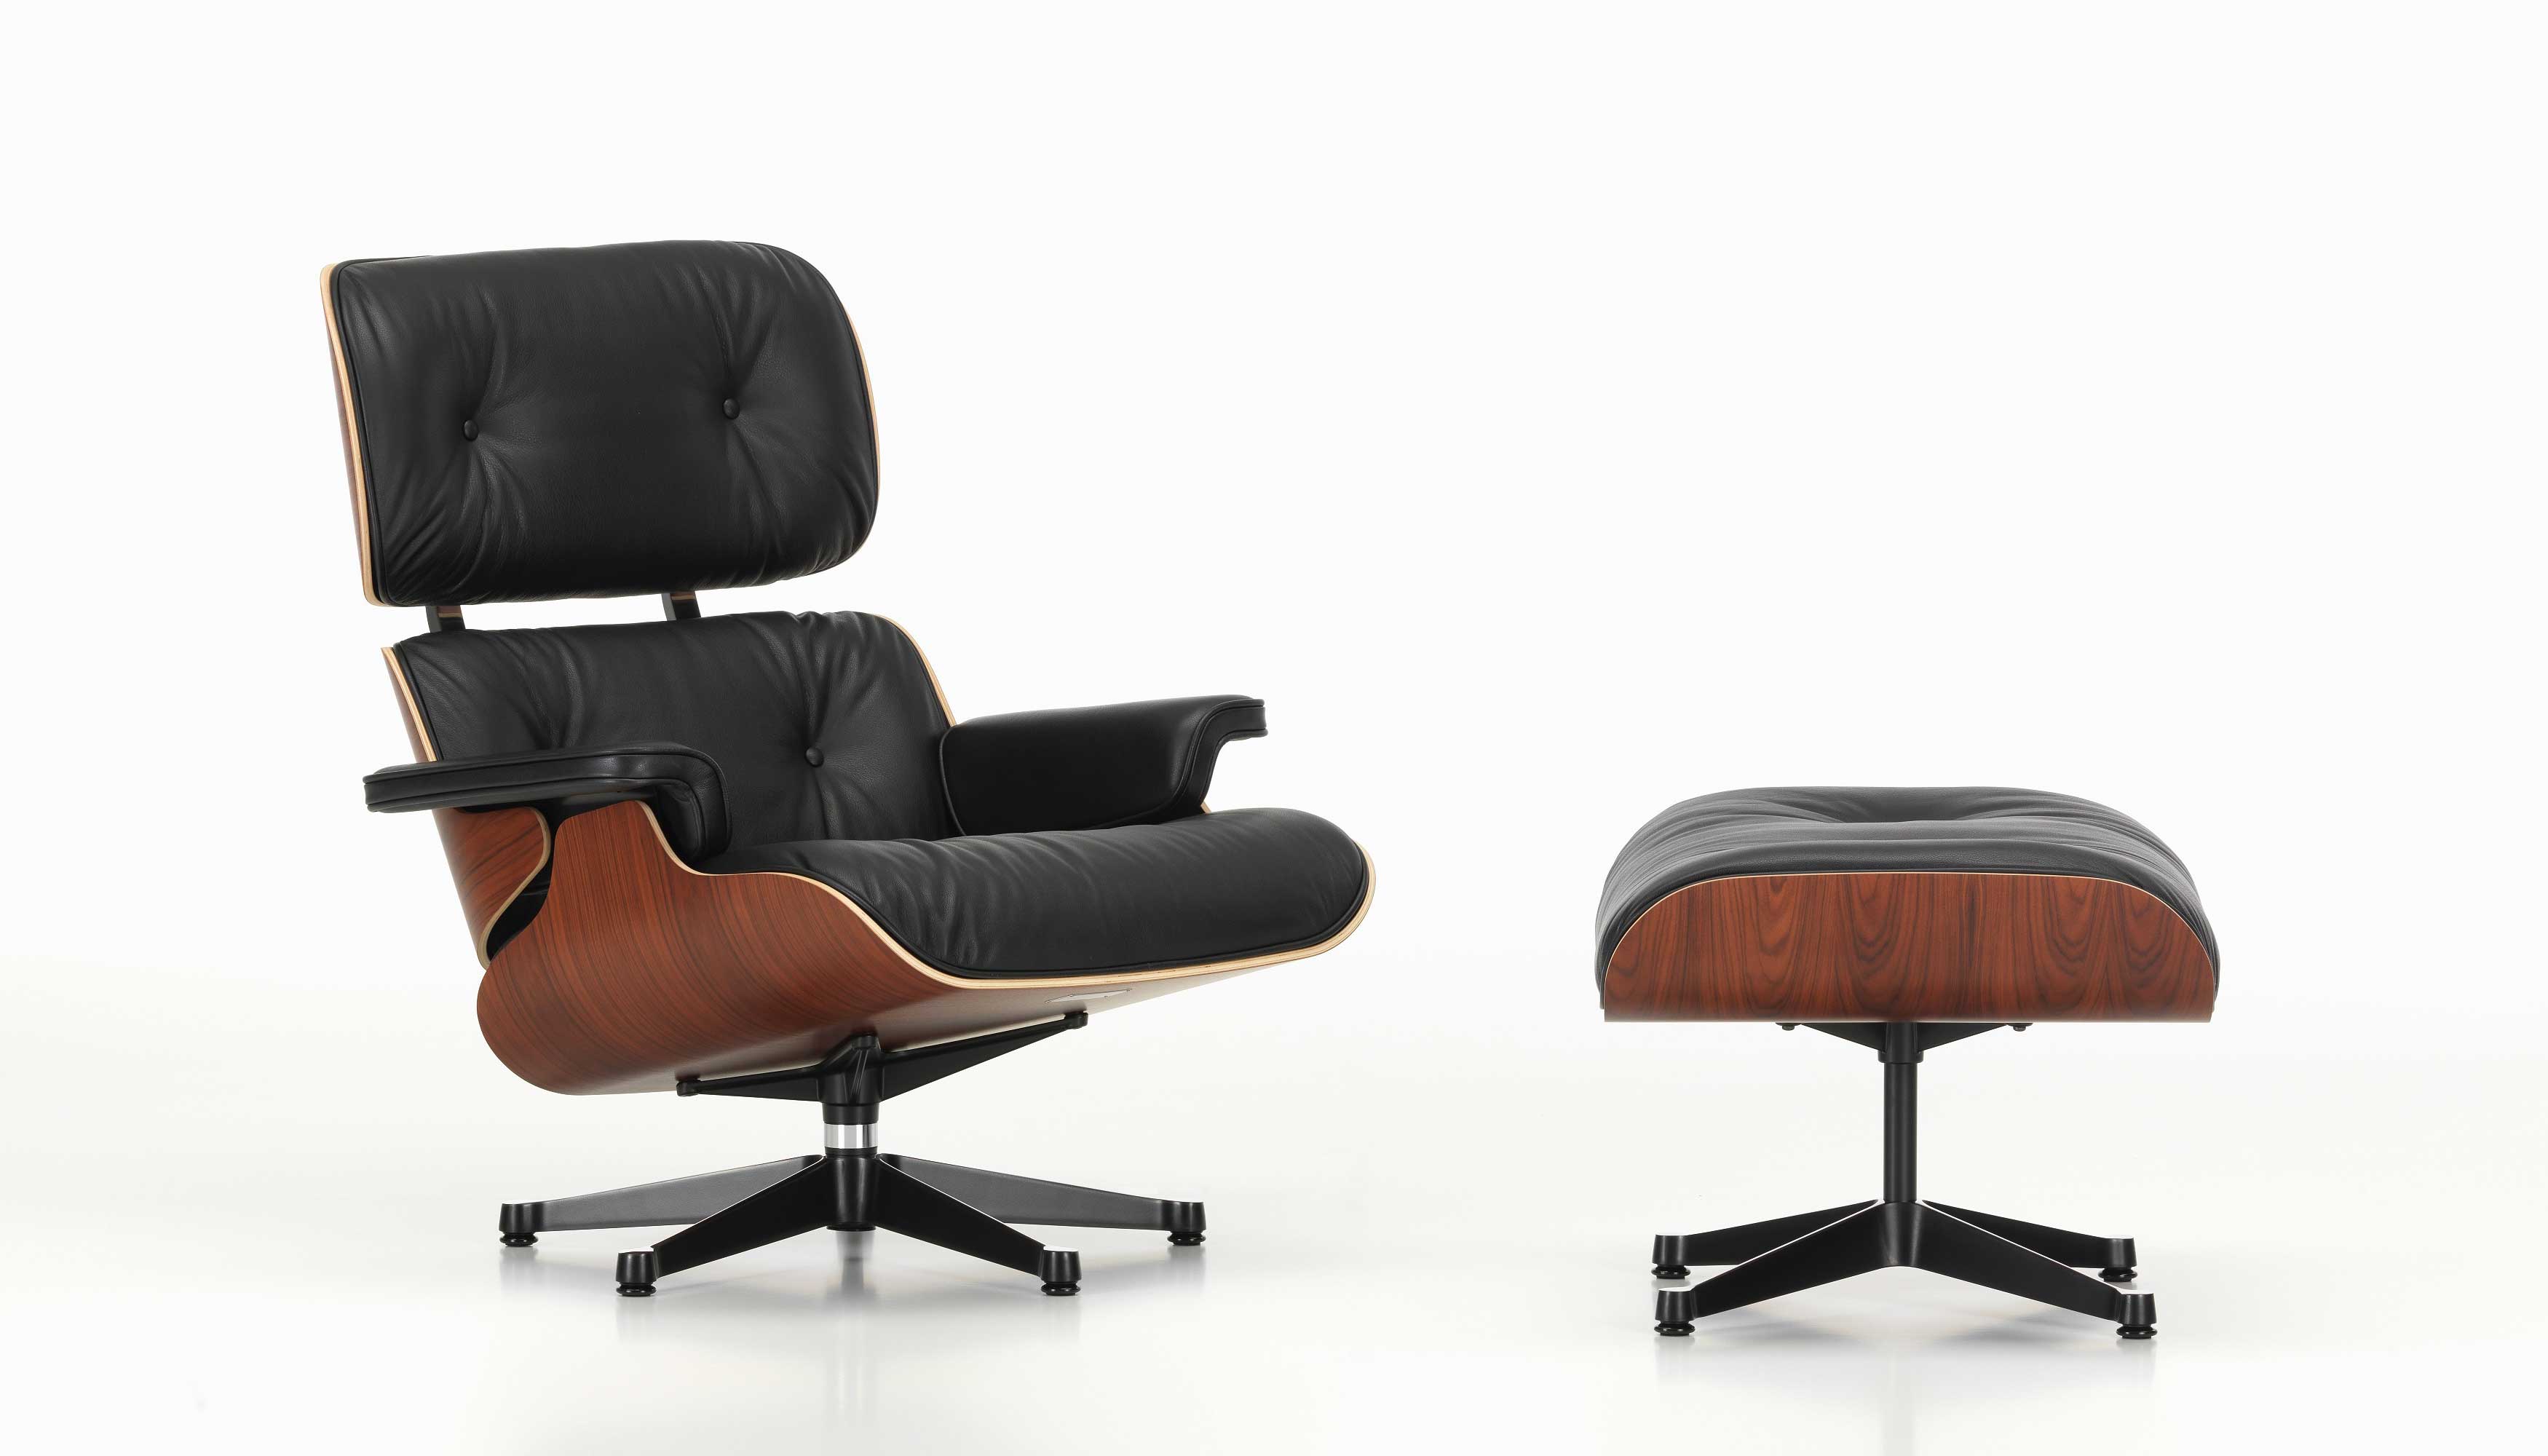 Designerstuhl Eames Lounge Chair mit Ottomane von Vitra mit schwarzem Leder und Holz Palisander und Fusskreuz schwarz bei LHL im Onlineshop kaufen – Frontansicht leicht gedreht